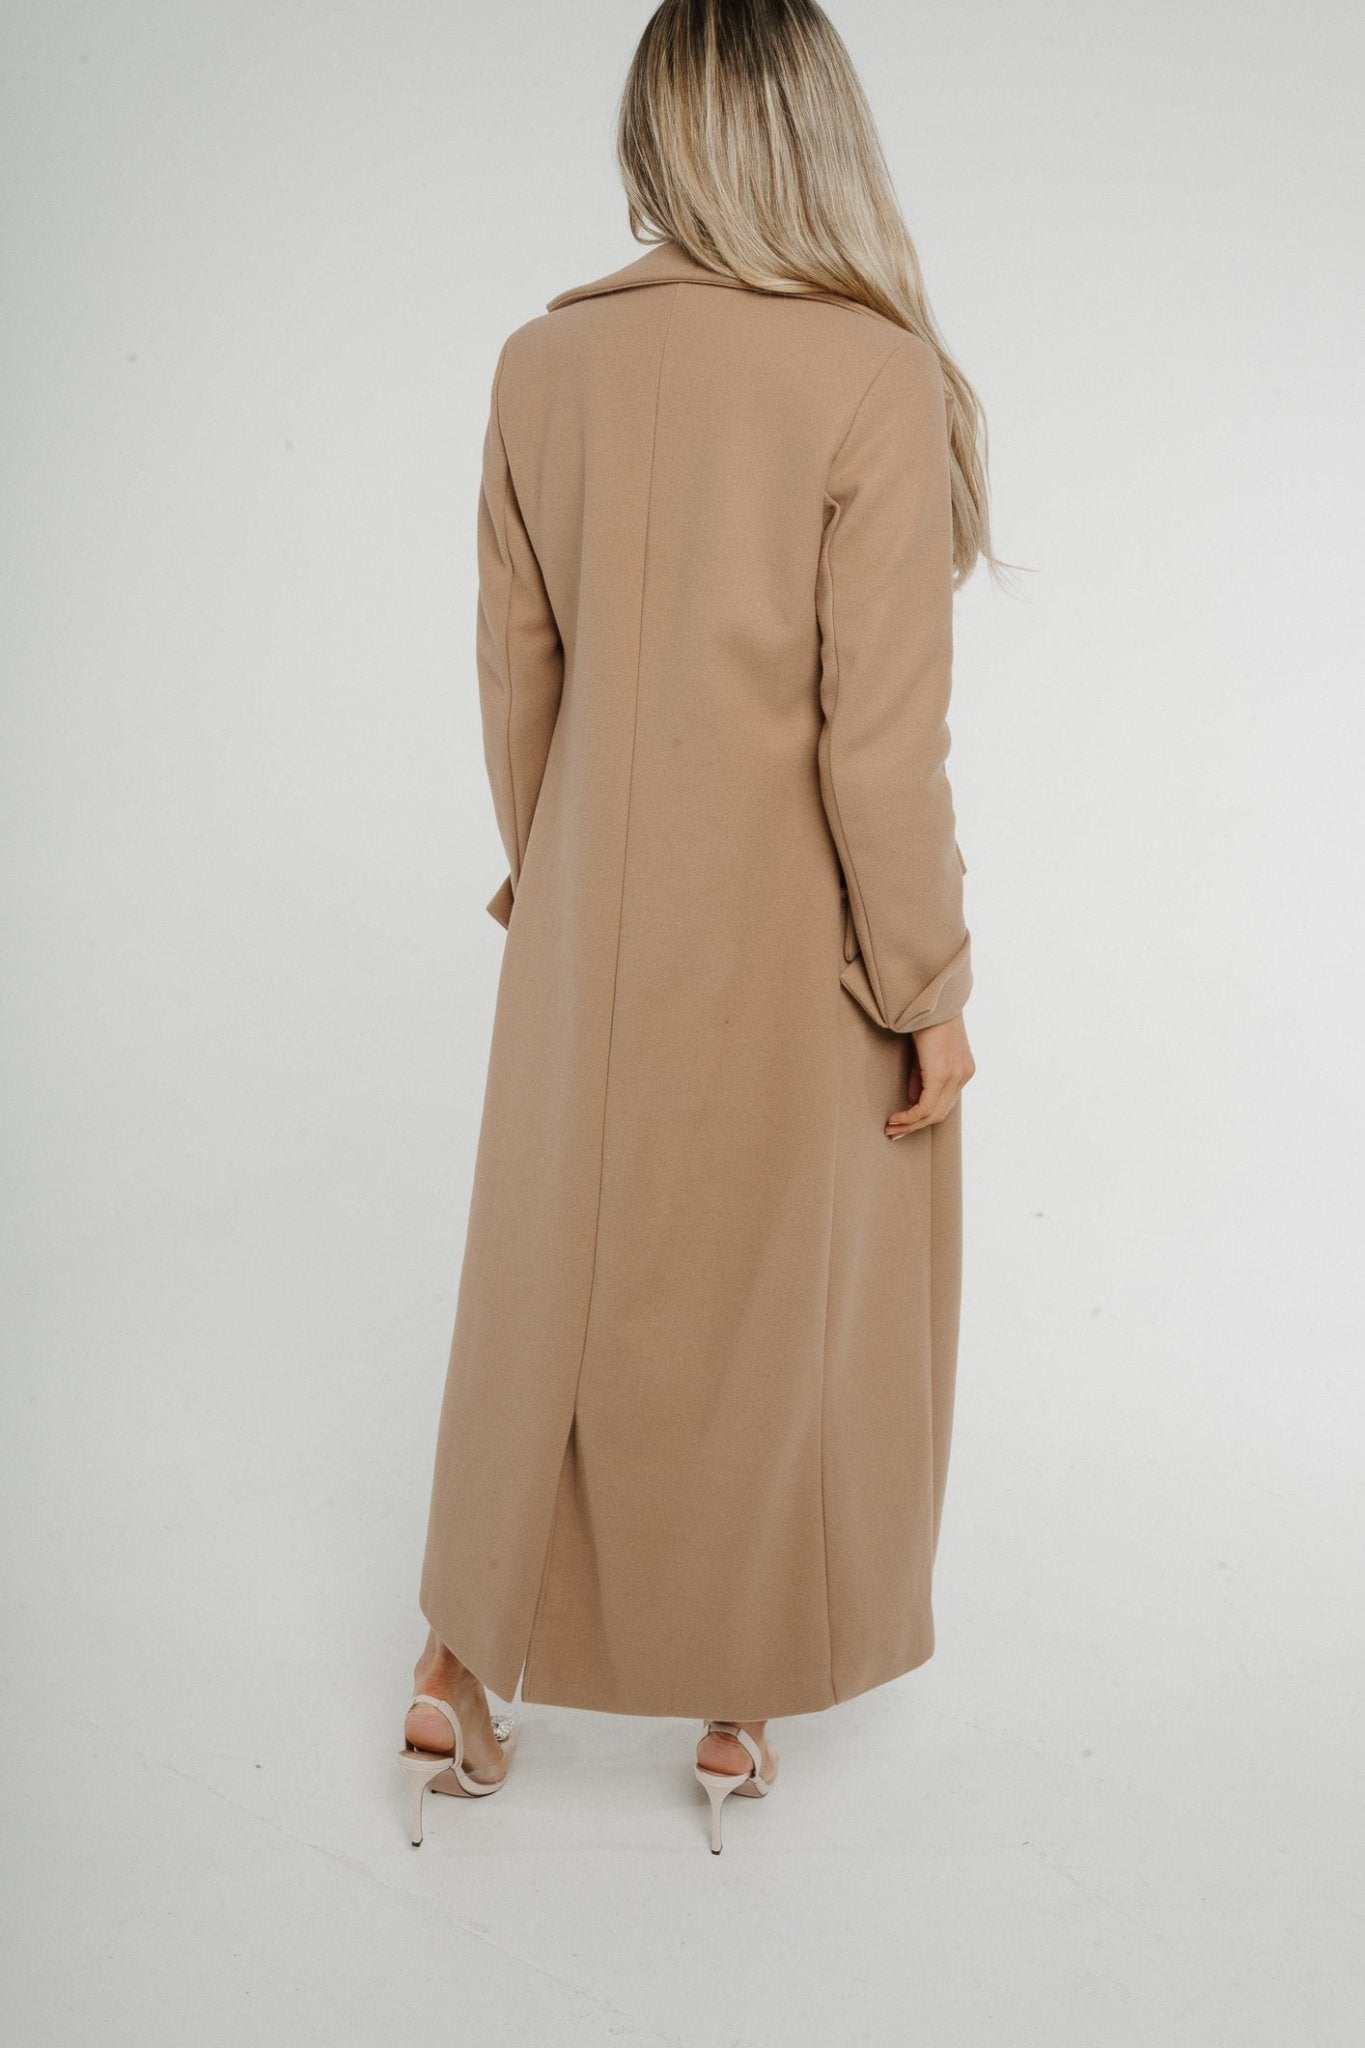 Jayme Longline Coat In Camel - The Walk in Wardrobe